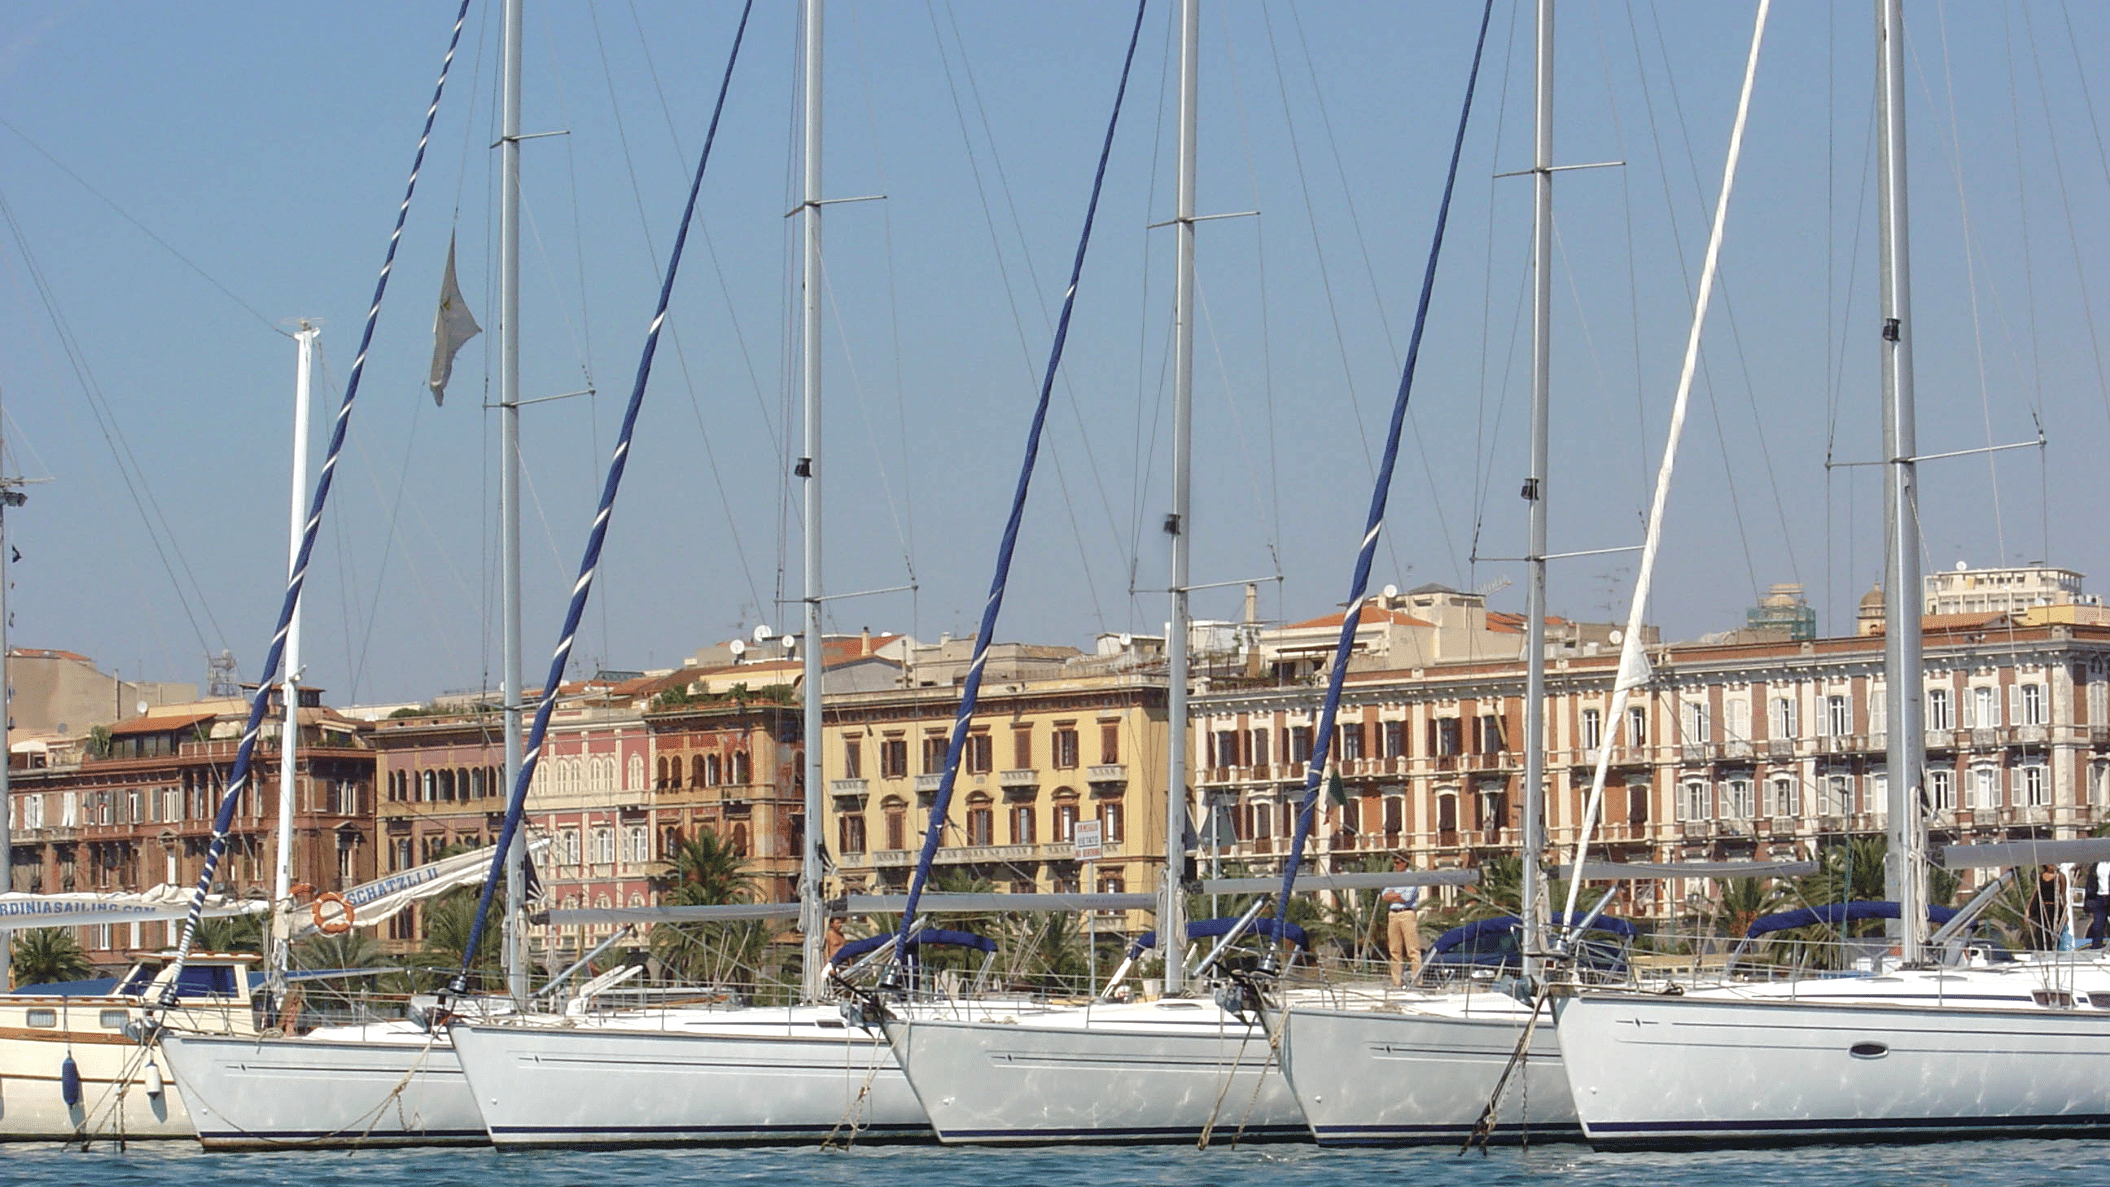 Noleggio barche a vela Cagliari